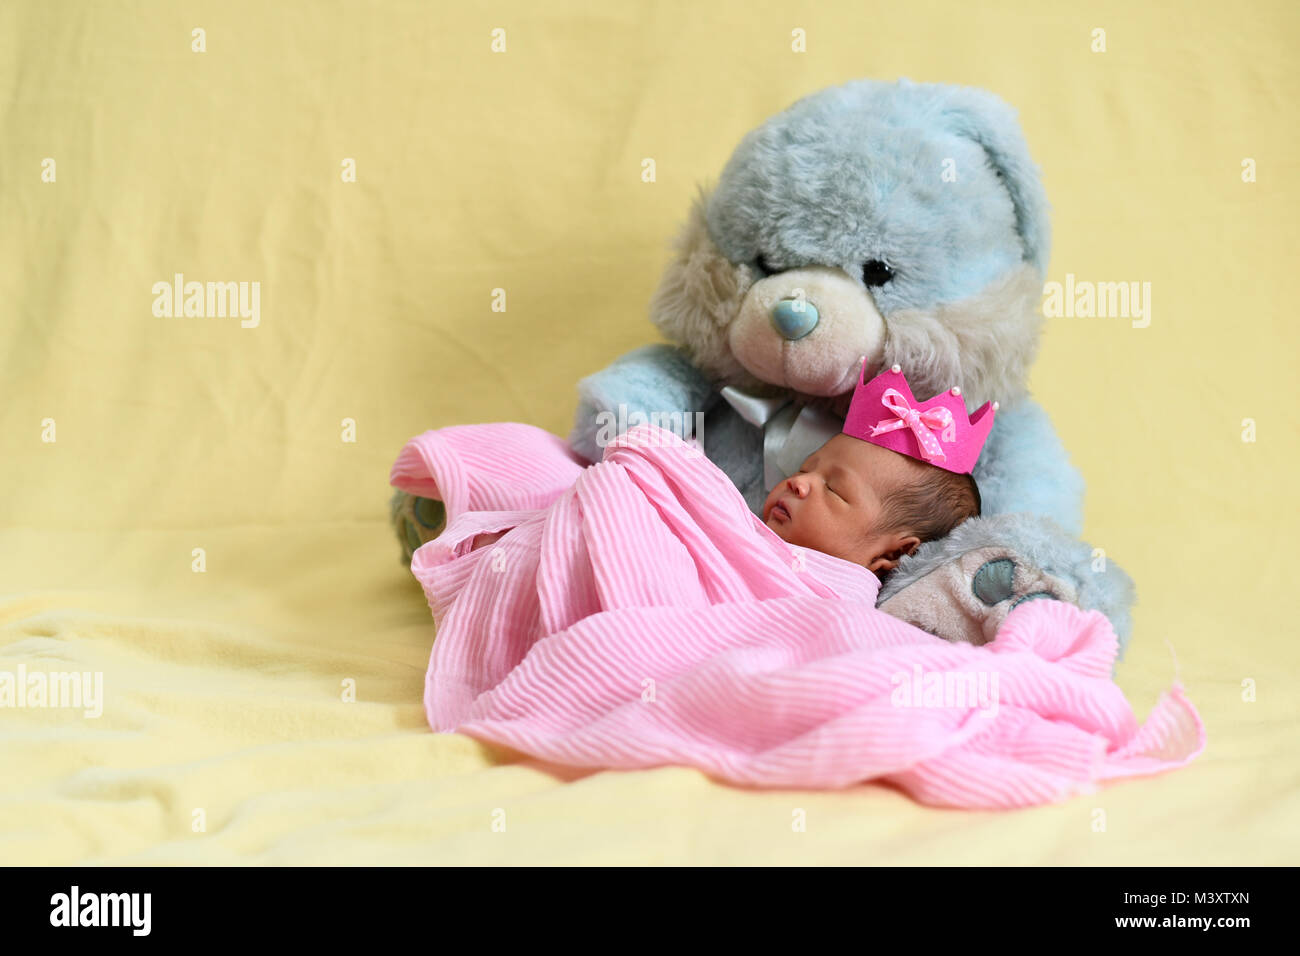 Asian newborn baby sleeping avec nounours. la croissance et l'enfance concept Banque D'Images